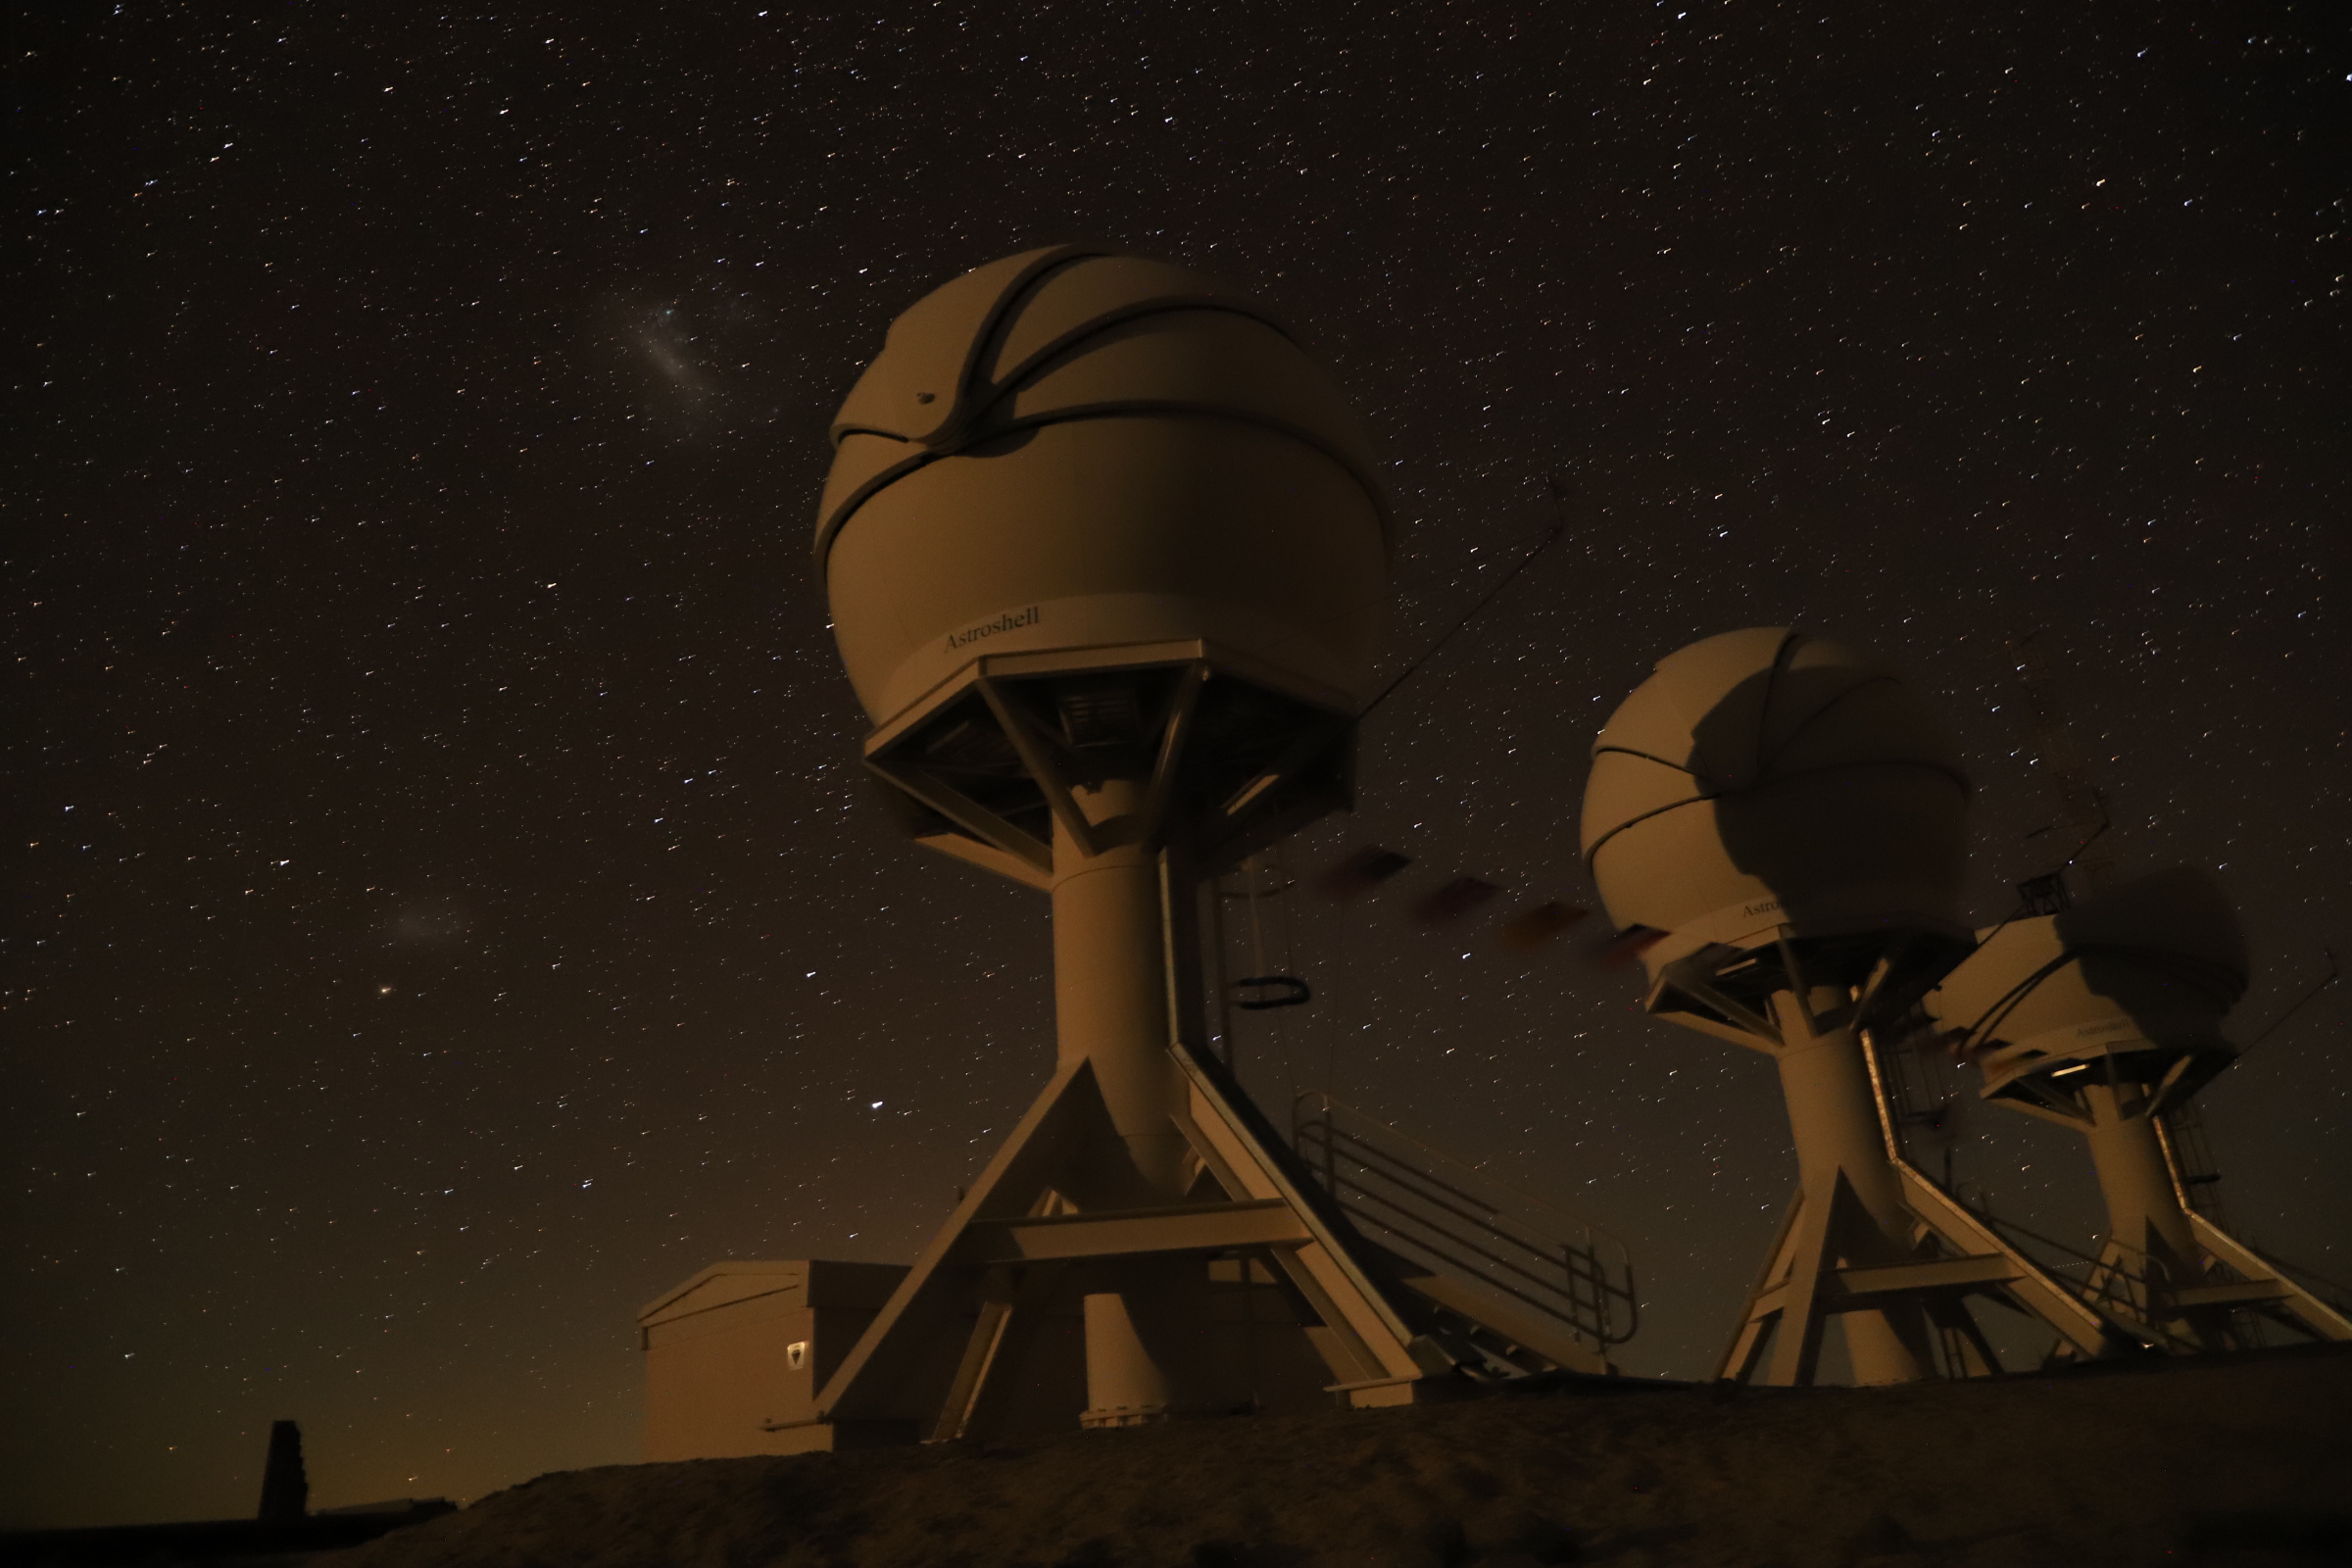 Blackgem telescopes at the La Silla observatory